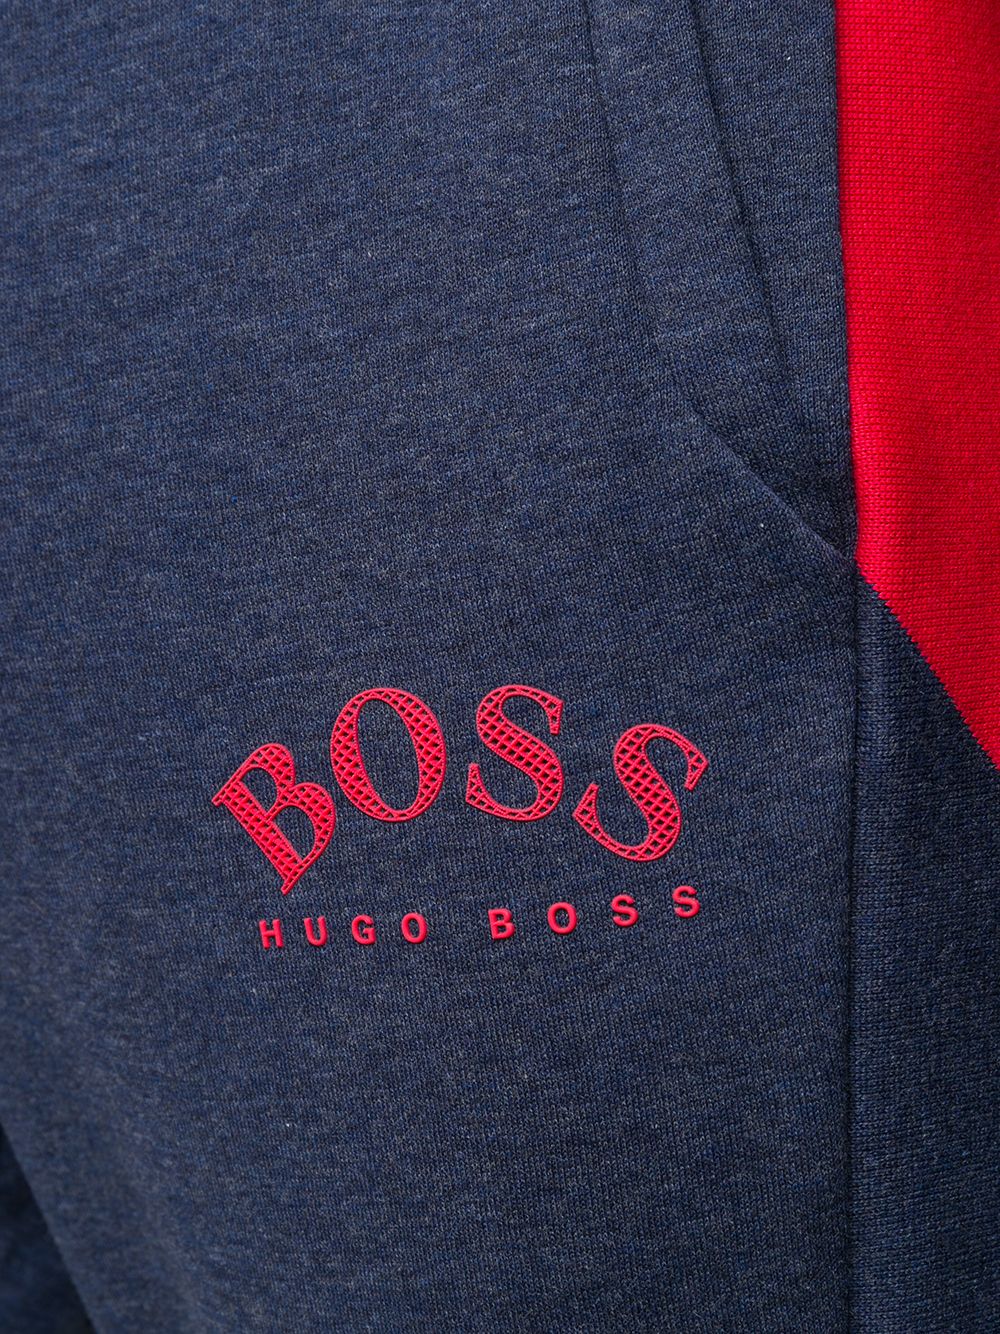 фото Boss hugo boss спортивные брюки с логотипом